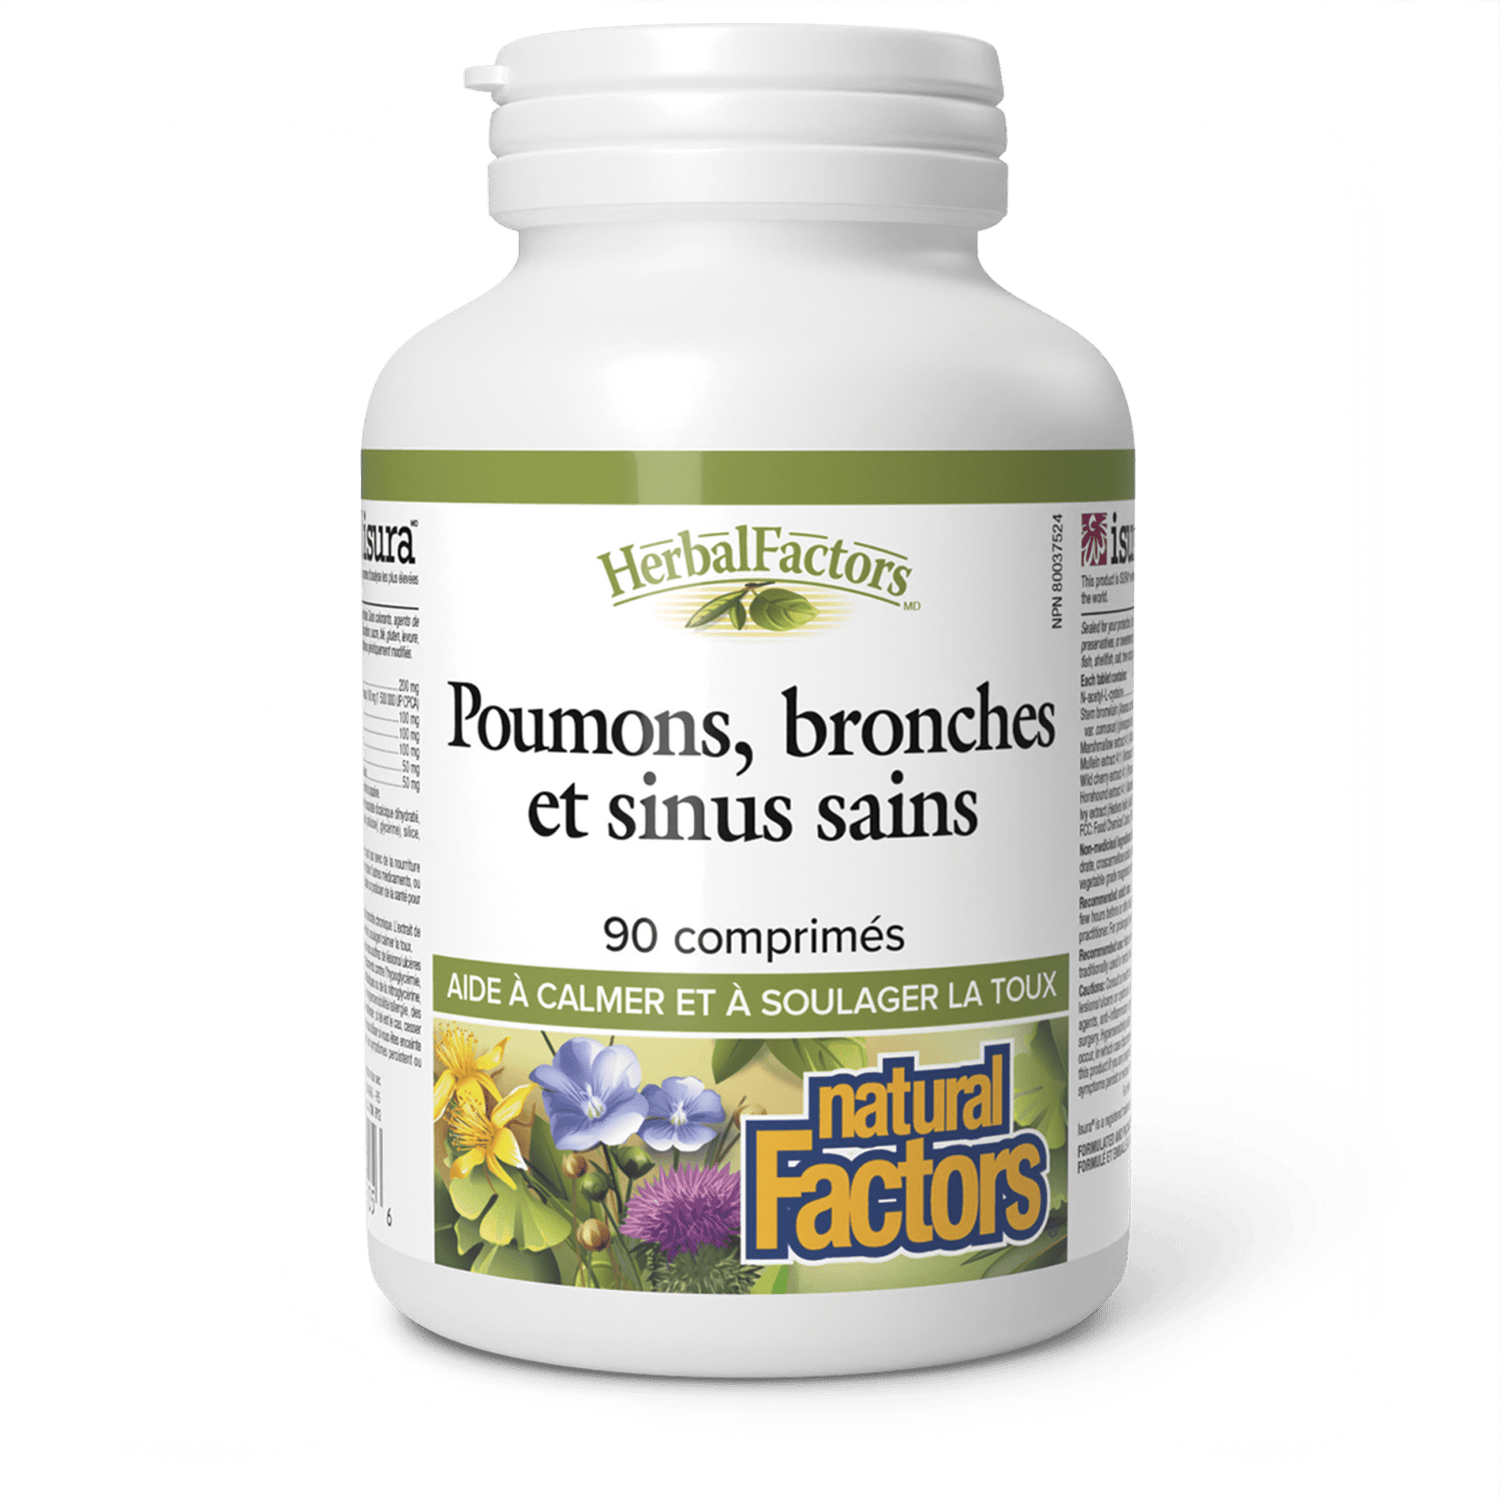 Poumons, bronches et sinus sains, HerbalFactors, Natural Factors|v|image|3505